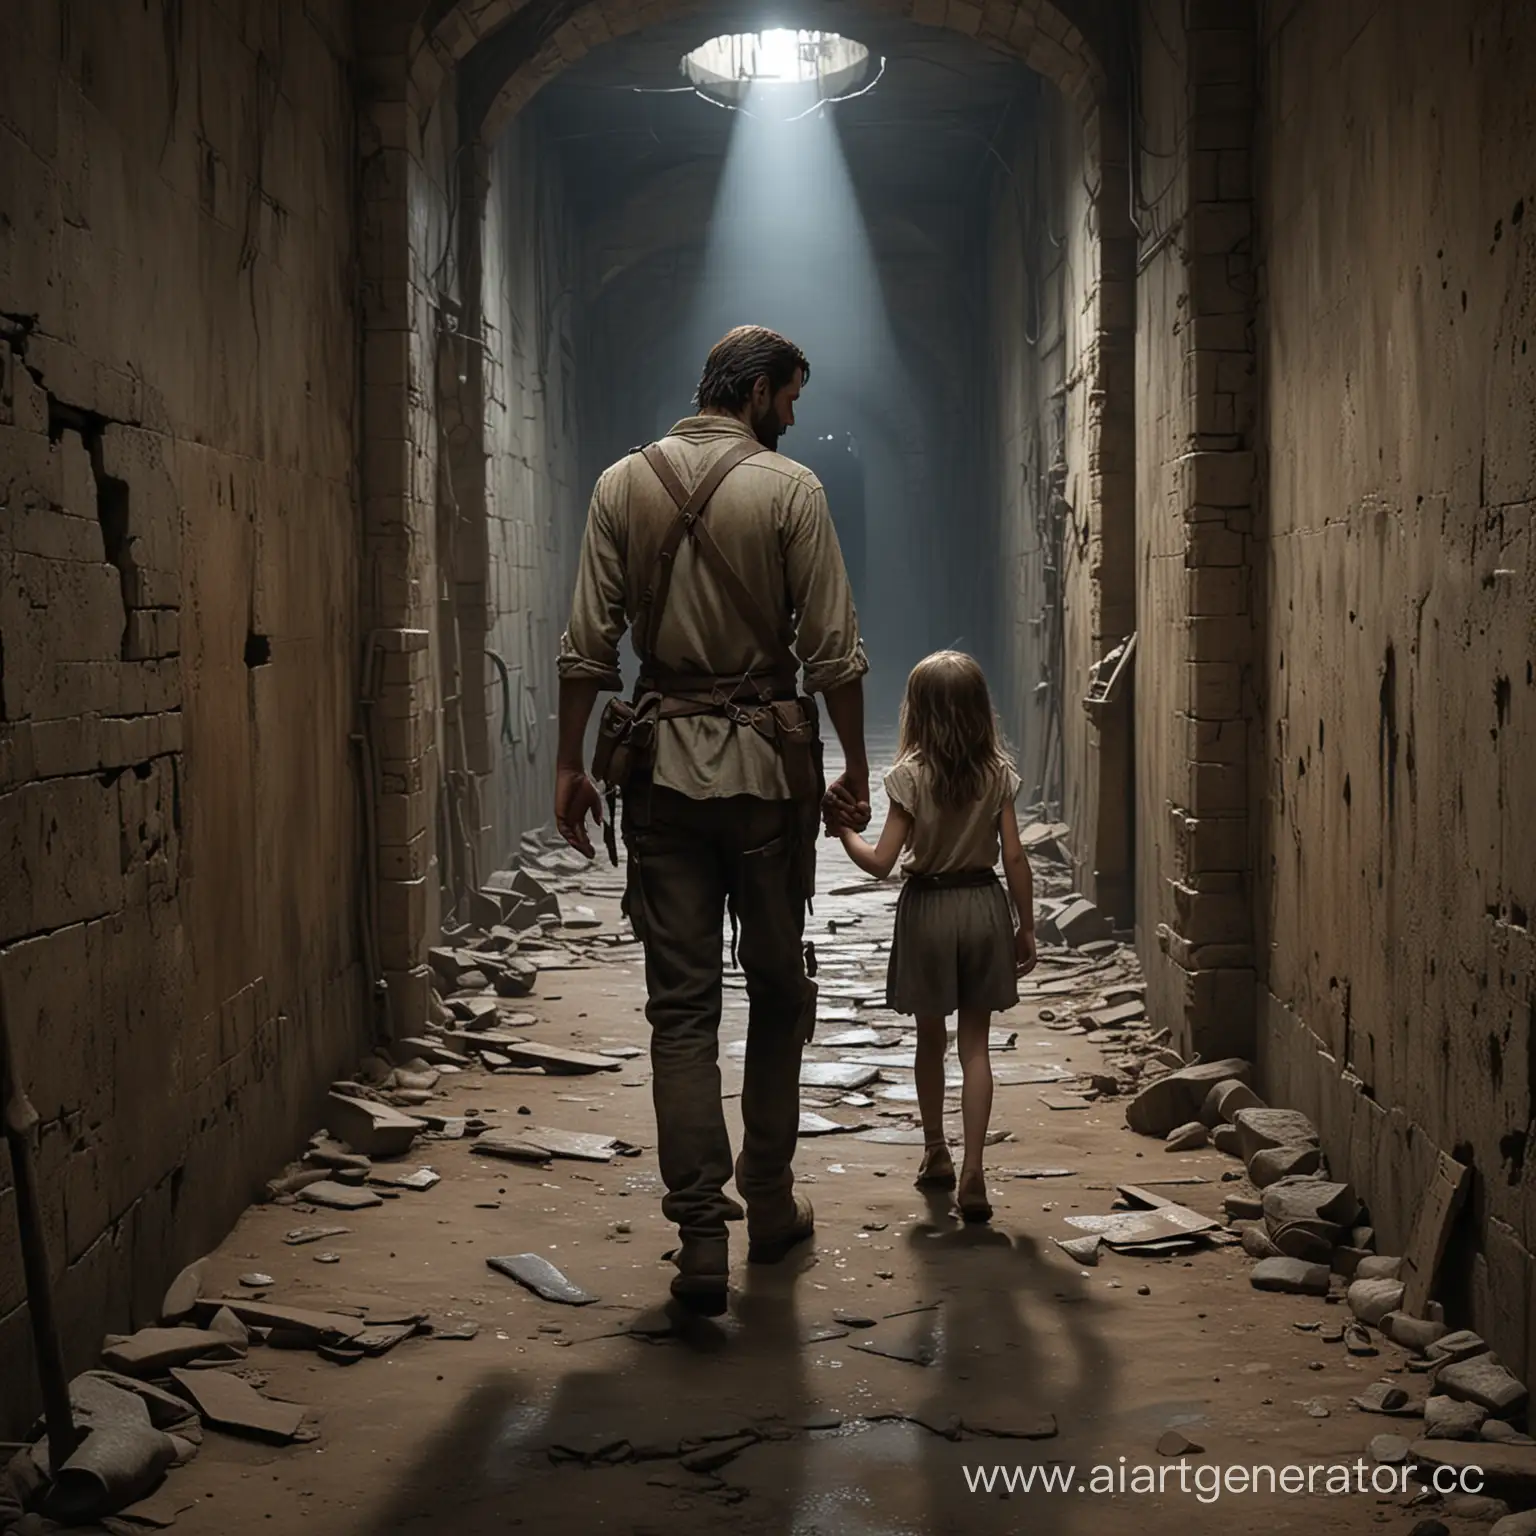 По заброшенному подземелью ходит суровый мужчина высокого роста со шрамом на лице и девочка маленького роста, которая держит его за руку, и следует за ним